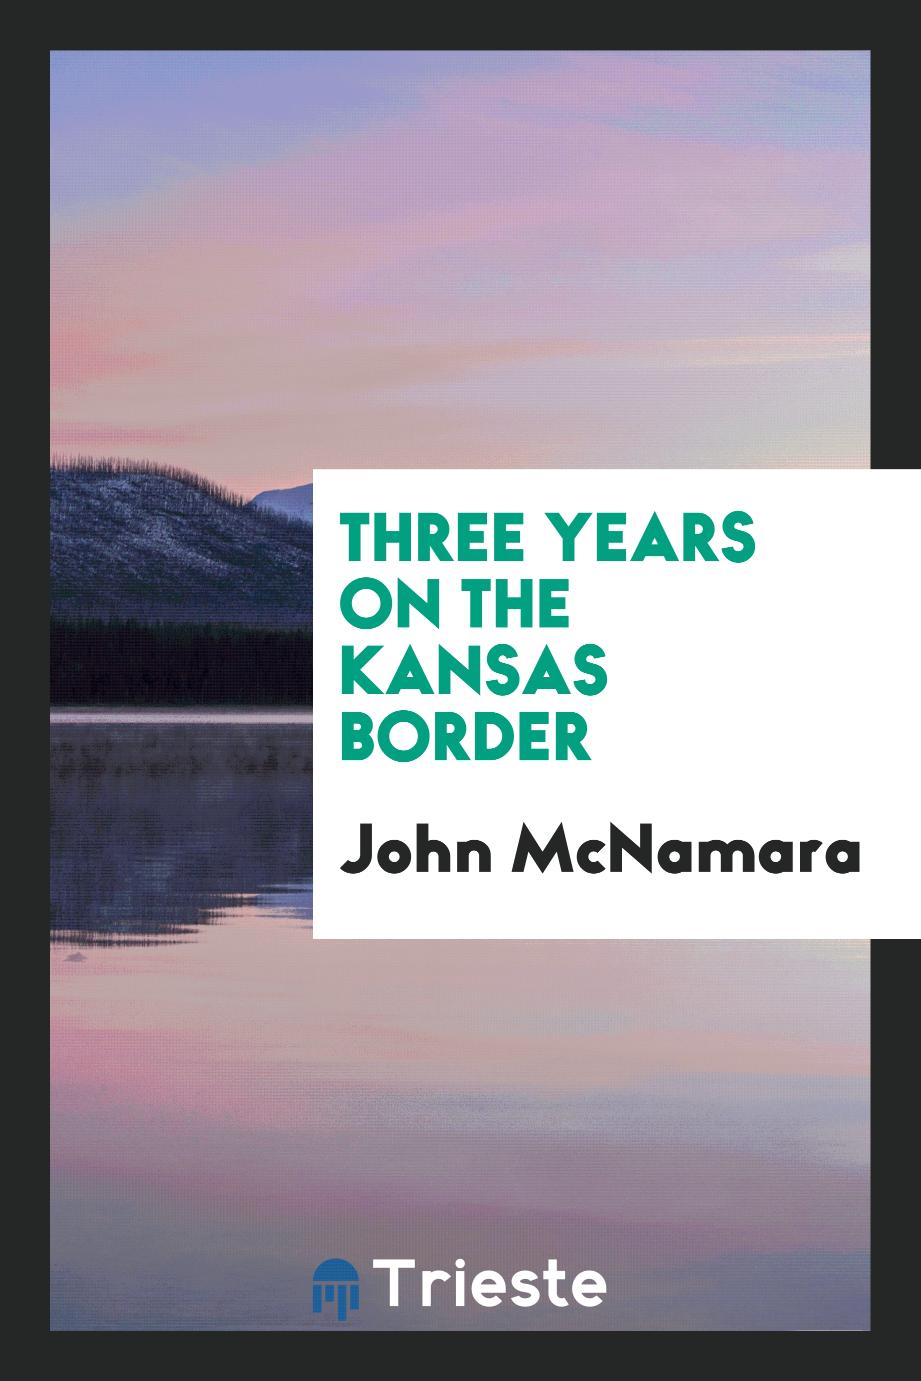 Three years on the Kansas border